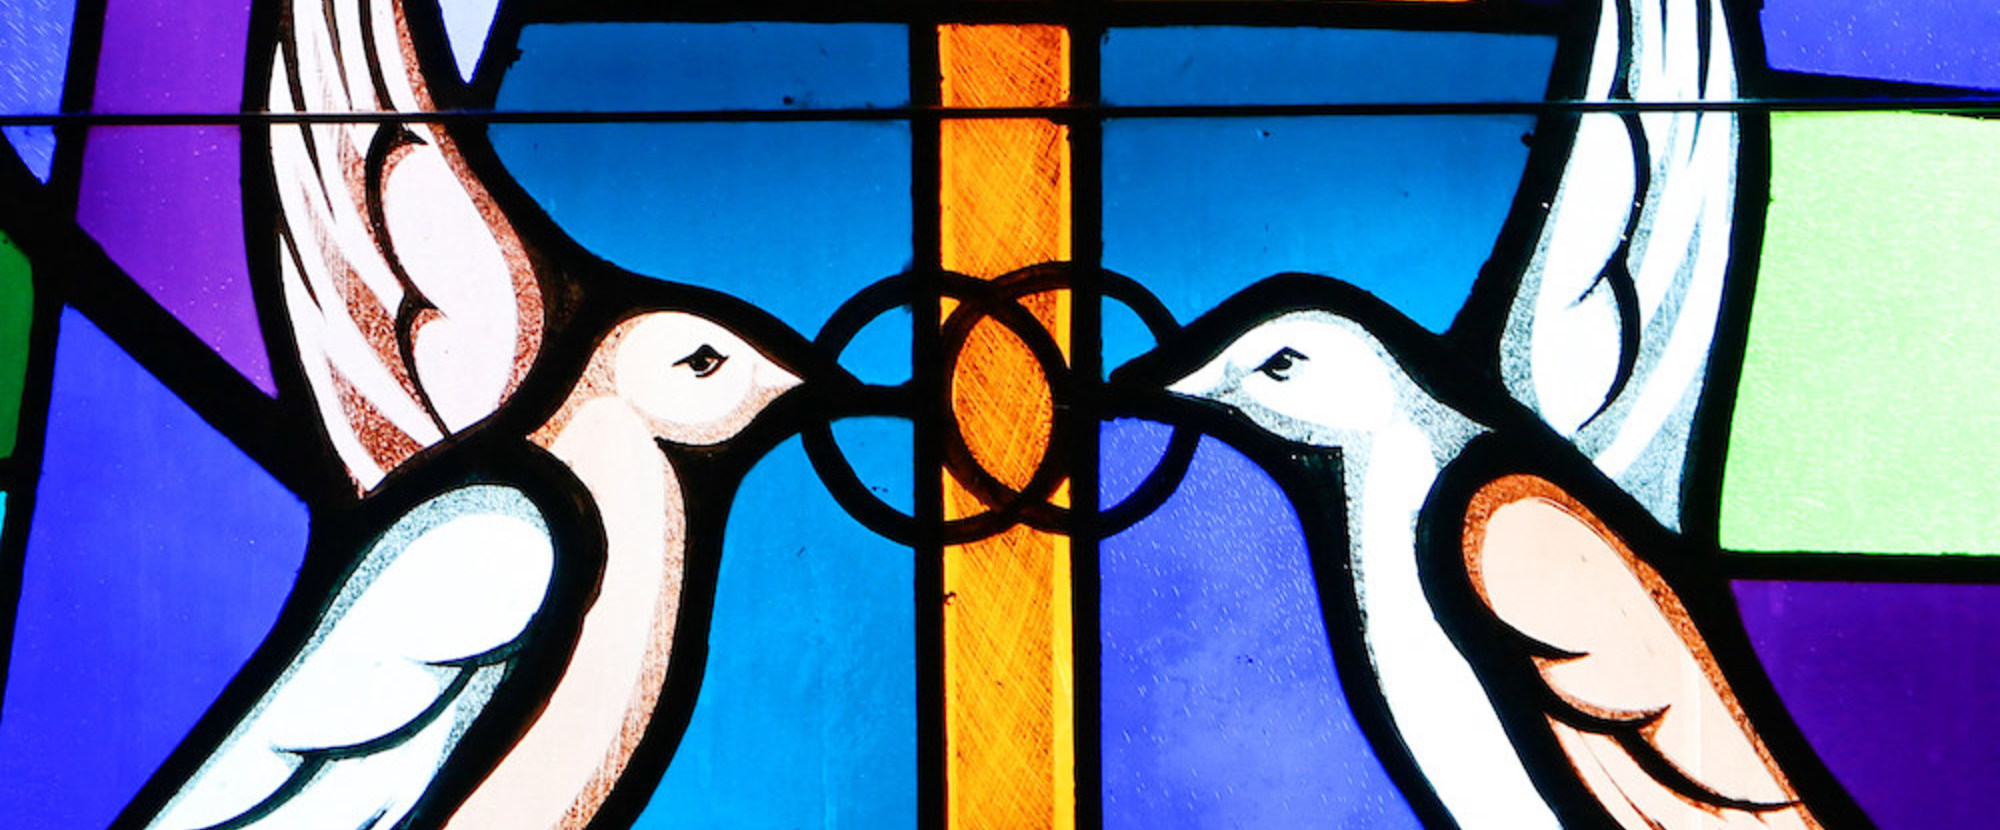 Buntglasfenster mit einer Darstellung von zwei weißen Tauben am 7. Mai 2017. Sie halten zwei ineinander verschlungene Ringe in den Schnäbeln, ein Symbol für Ehe. (Aufnahmeort unbekannt)